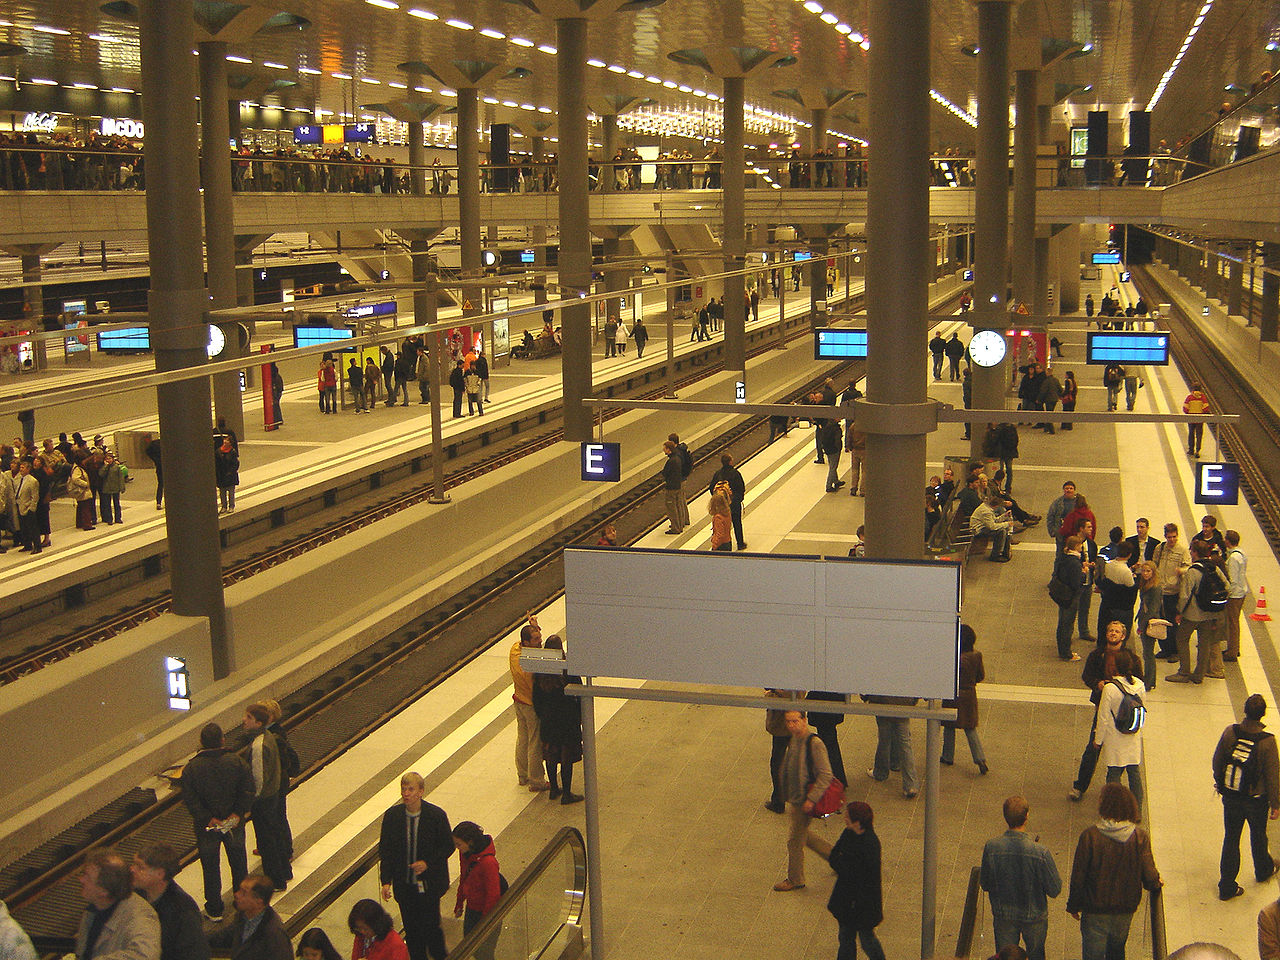 Podzemní nástupiště hlavního nádraží v Berlíně. CC BY-SA 3.0, https://commons.wikimedia.org/w/index.php?curid=817020